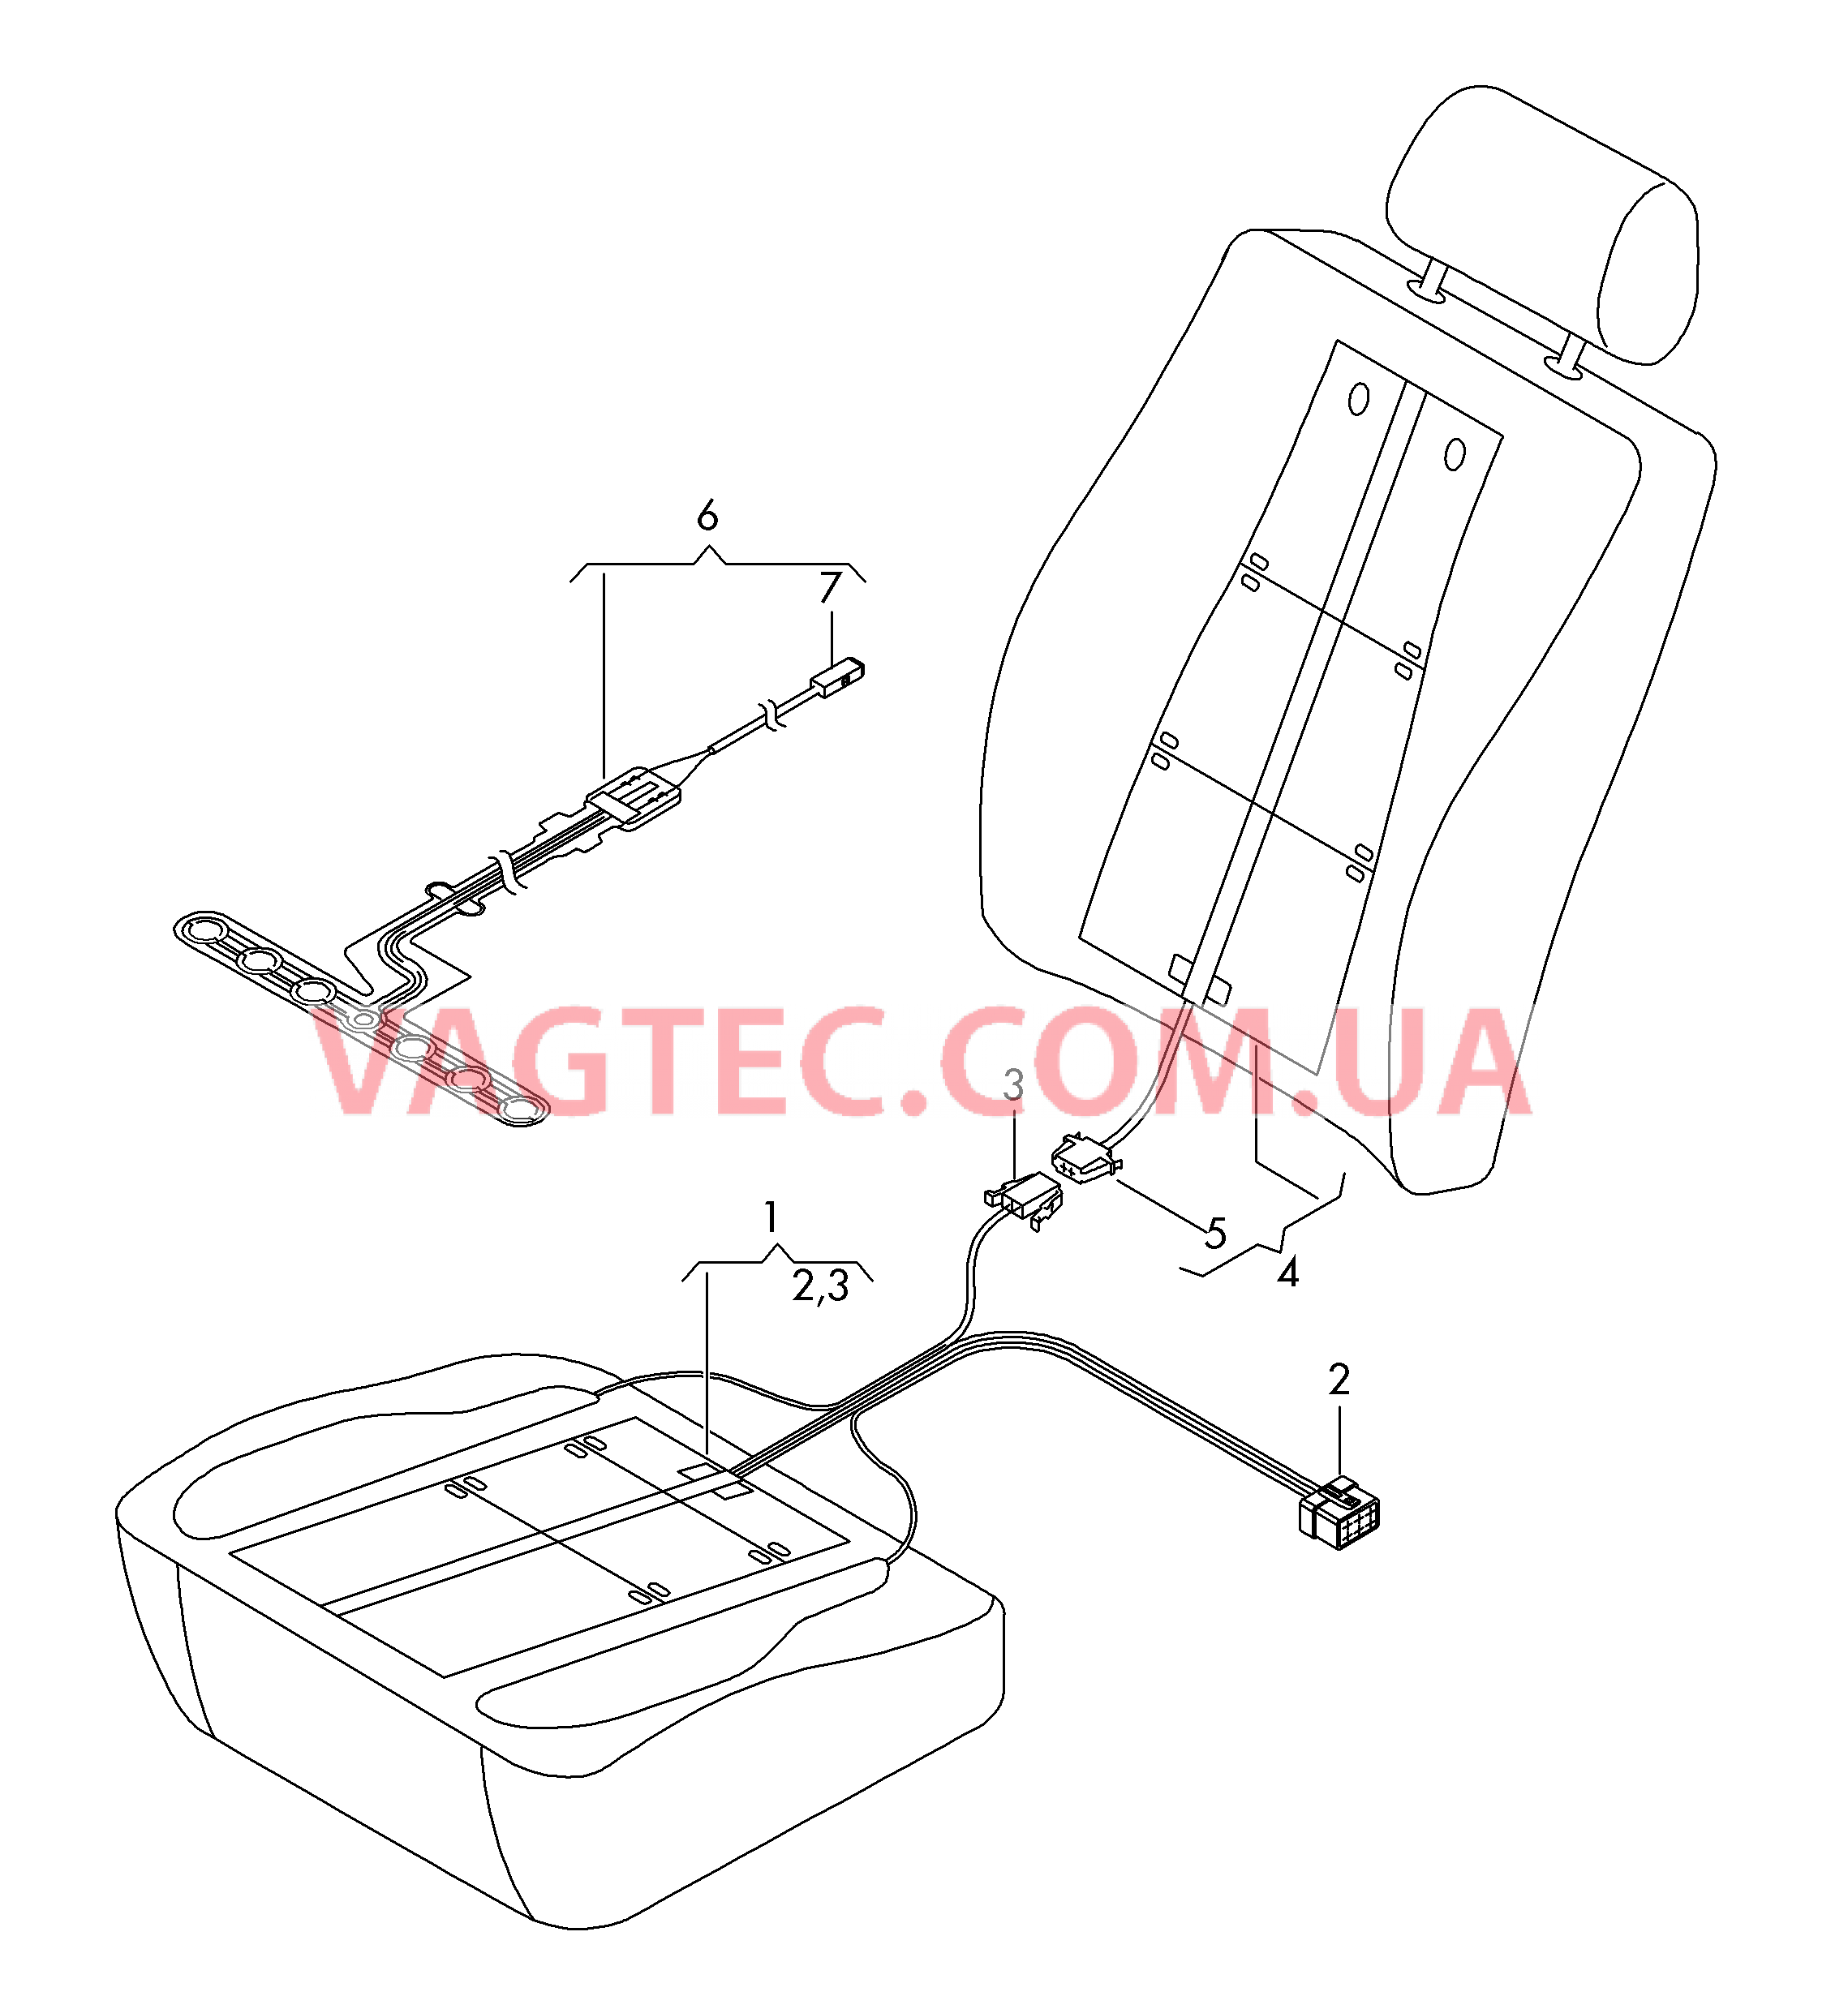 Нагревательный элемент спинки и подушки сиденья  Вставка распознавания занятости сиденья  для AUDI A3 2015